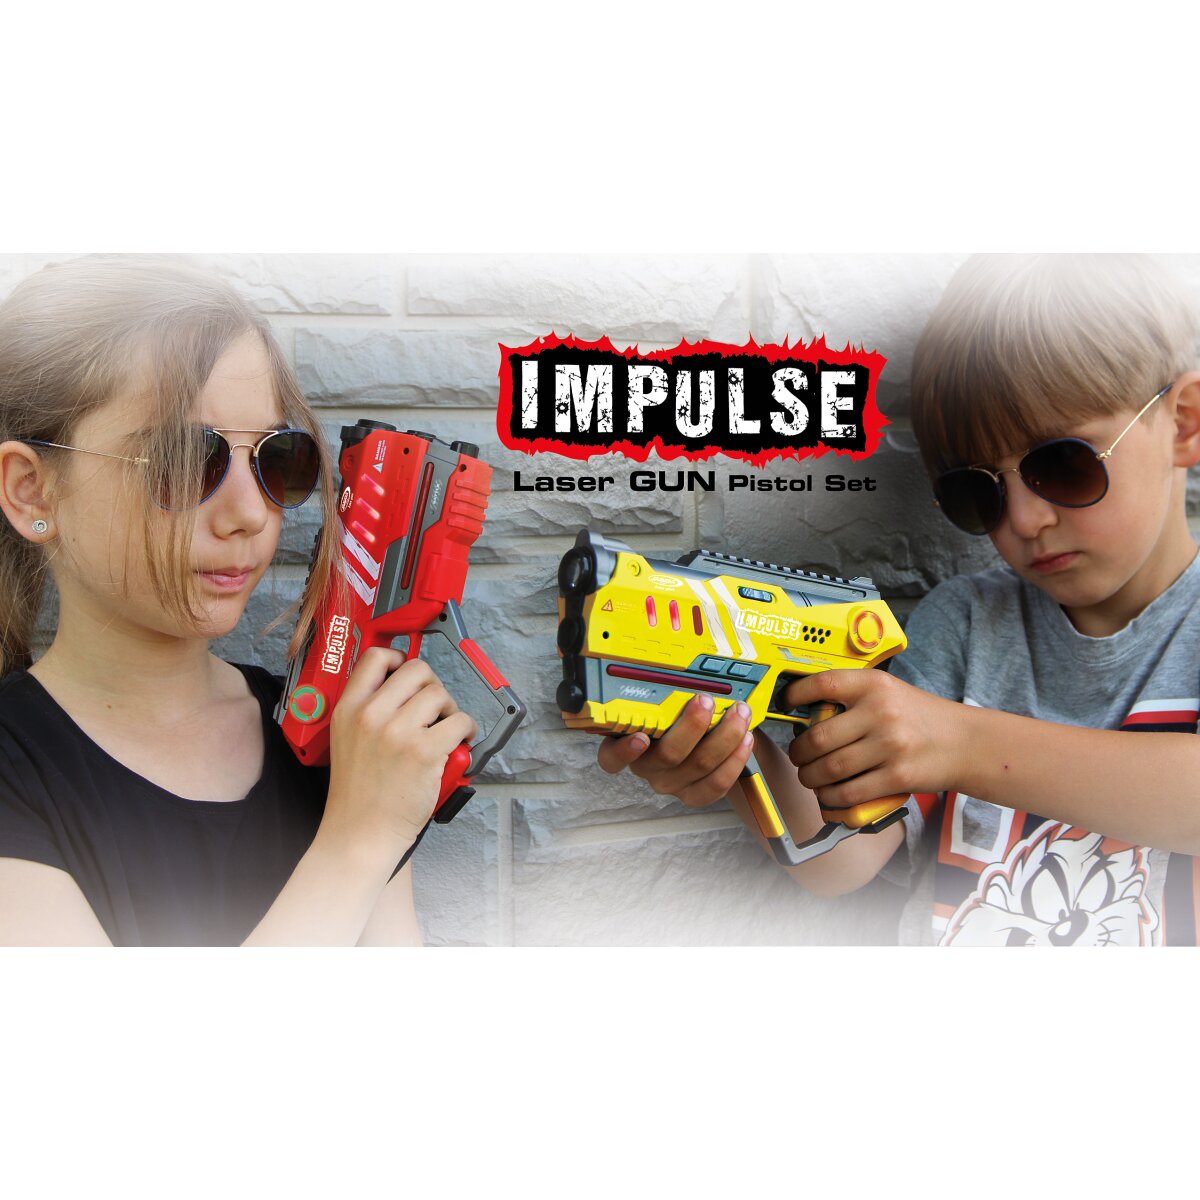 Impulse Laser Gun Pistol Set gelb/rot